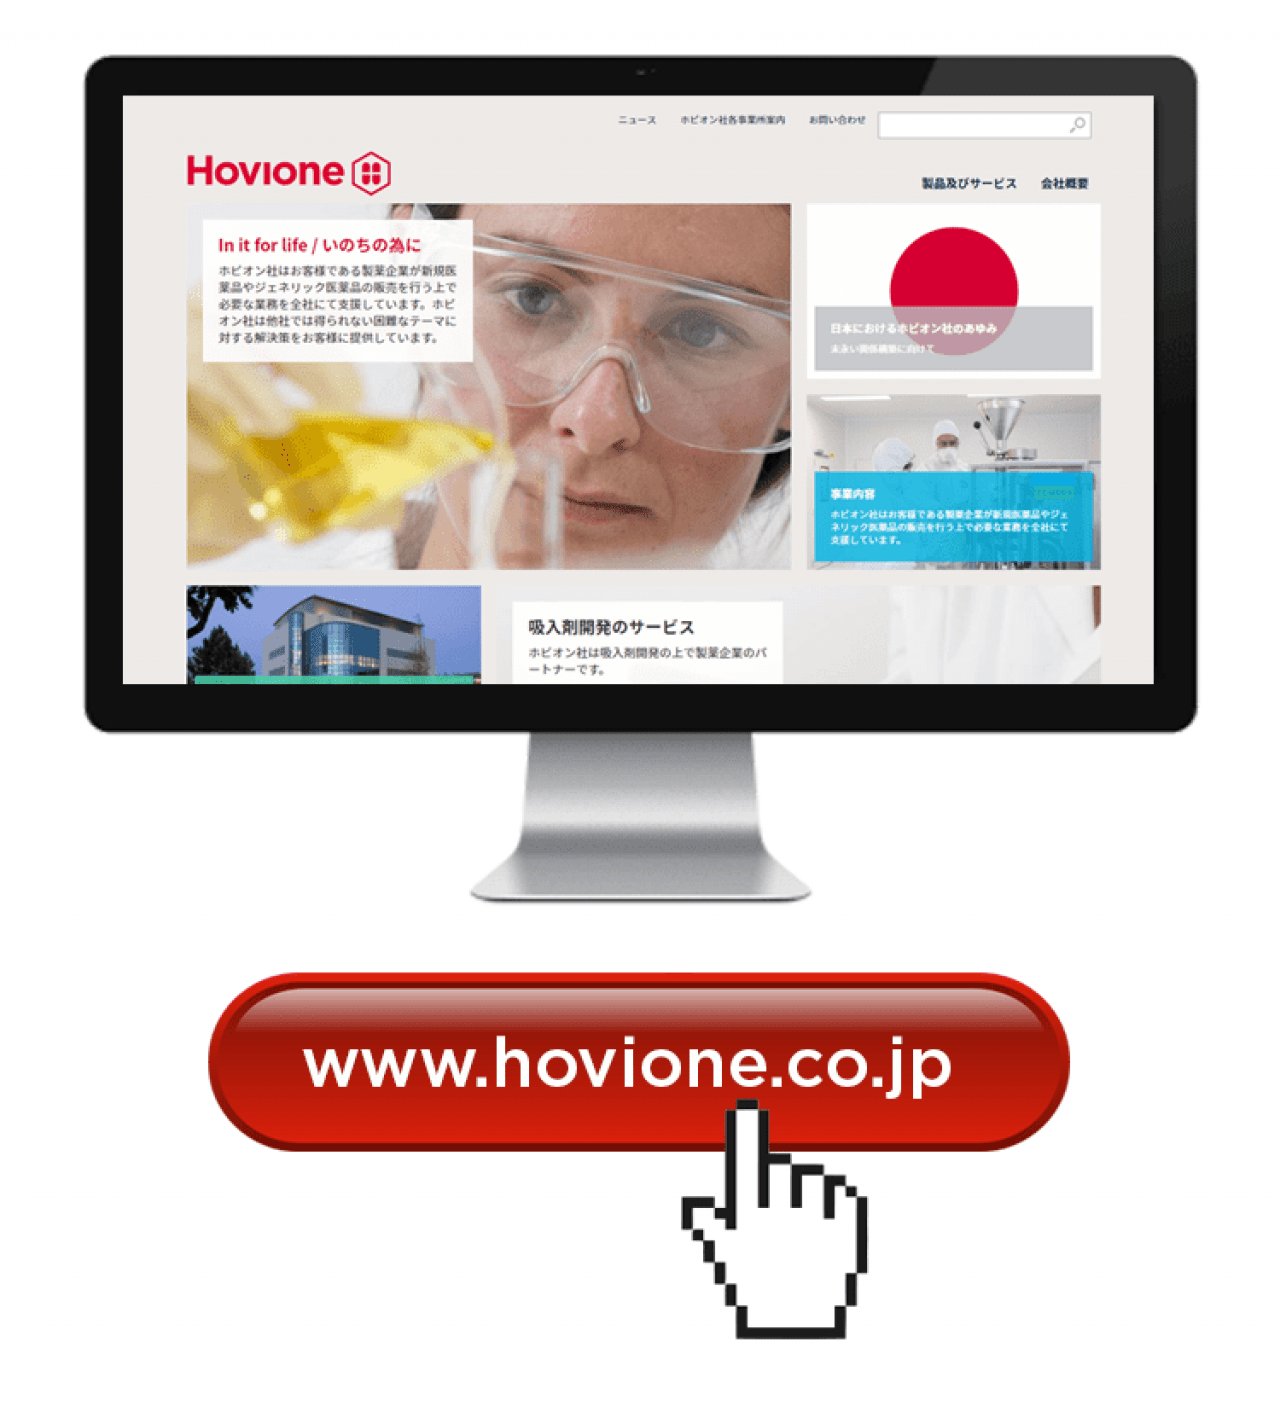 Hovione Japan: New Website | Hovione